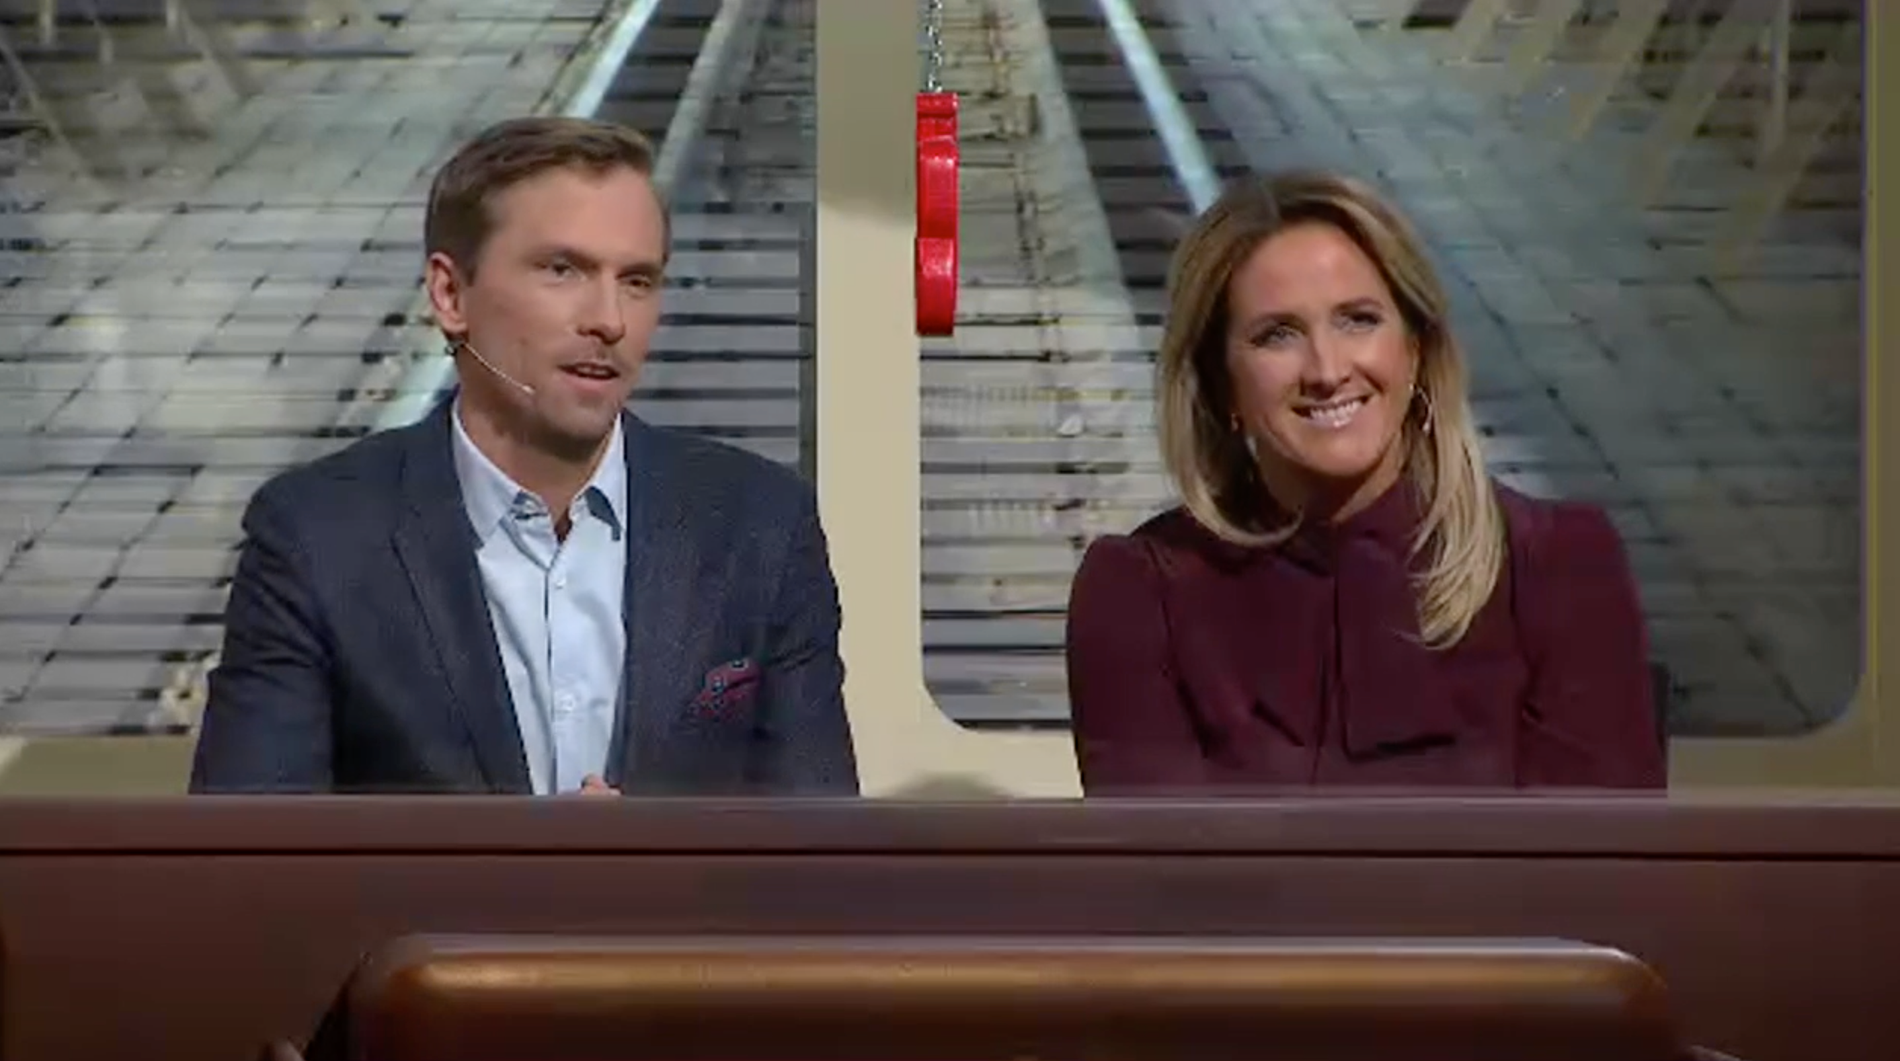 Skidåkaren Johan Olsson och författaren Denise Rudberg gör debut i ”På spårets” säsongsstart.